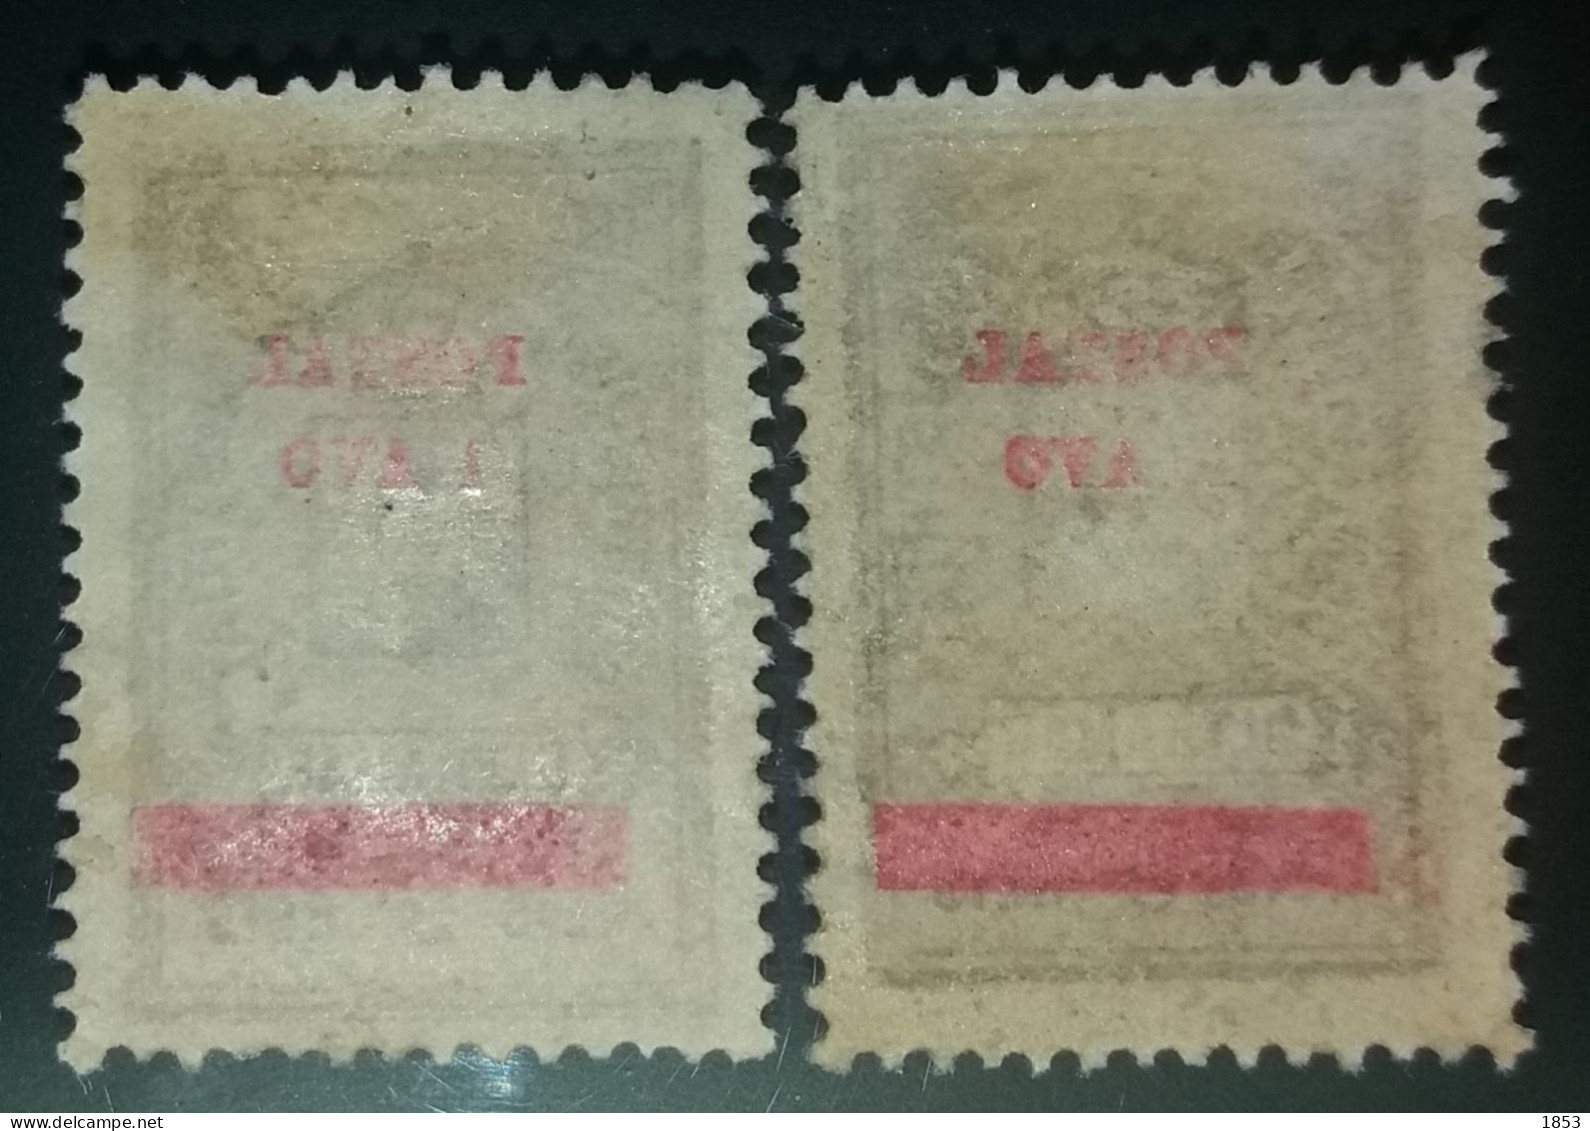 MACAU - 1911 - ESTAMPILHA FISCAL, COM SOBRETAXA - Used Stamps